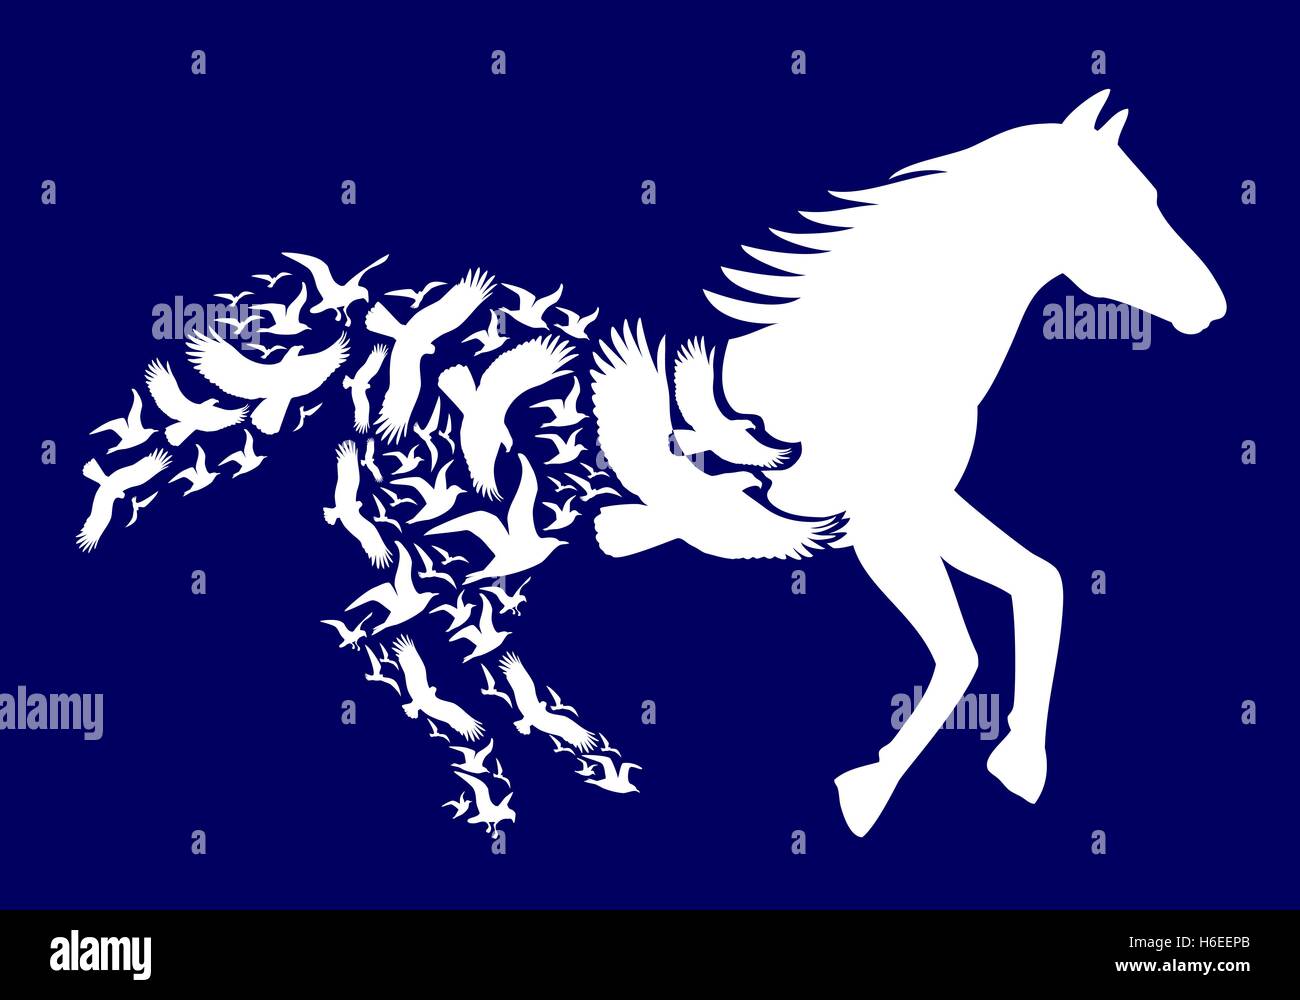 Weißes Pferd mit fliegenden Vögel auf dunkelblauem Hintergrund, Vektor-illustration Stock Vektor